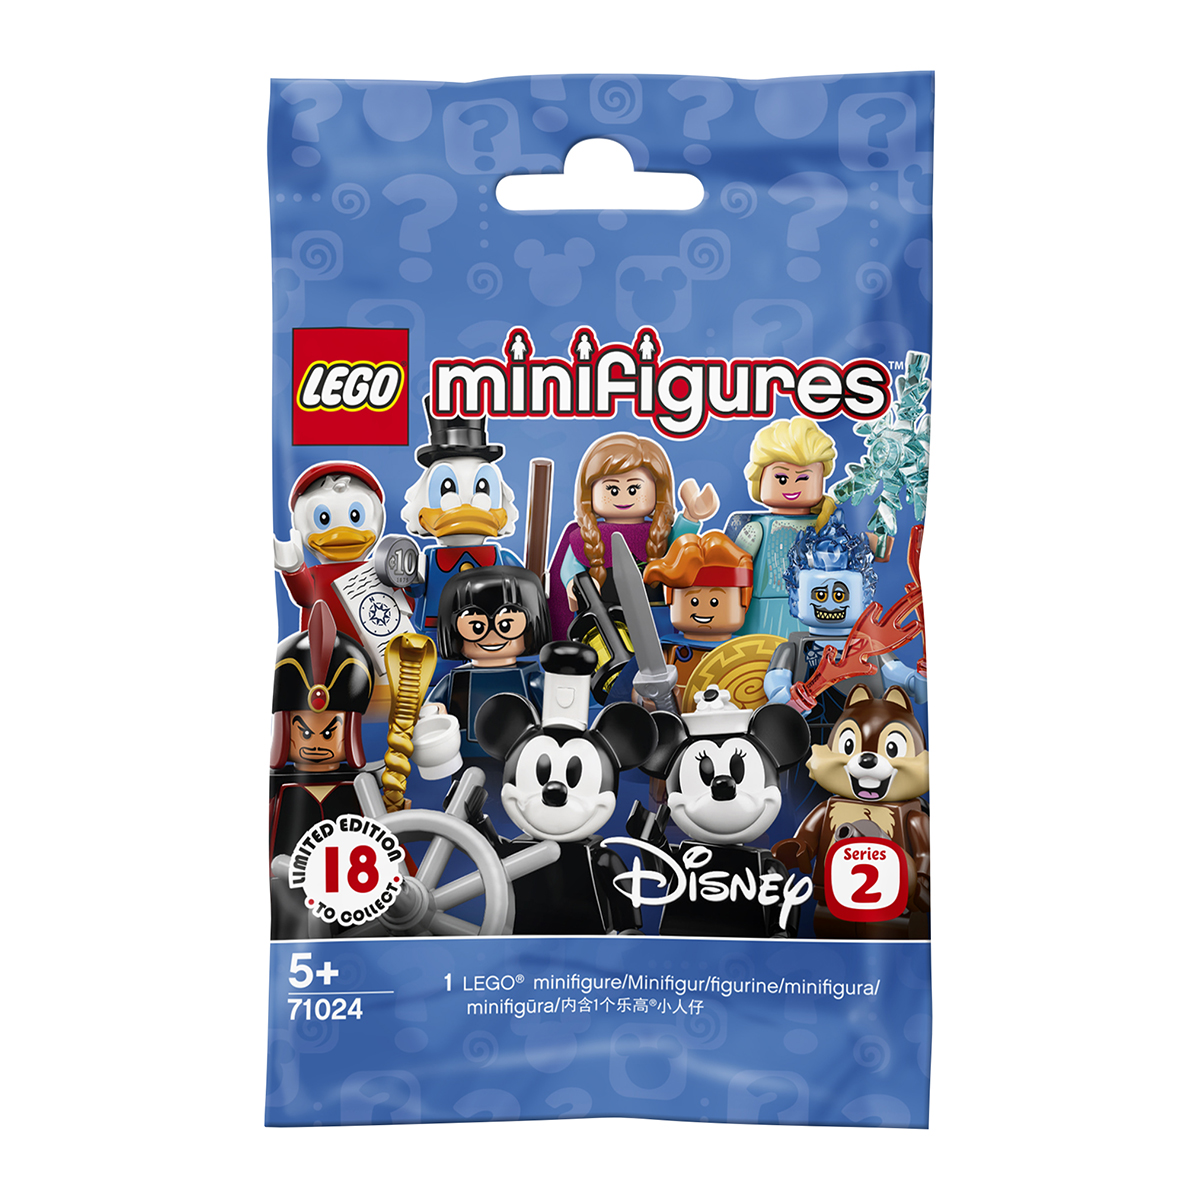 Figurina surpriza LEGO® Minifigures - Disney 2 (71024) imagine